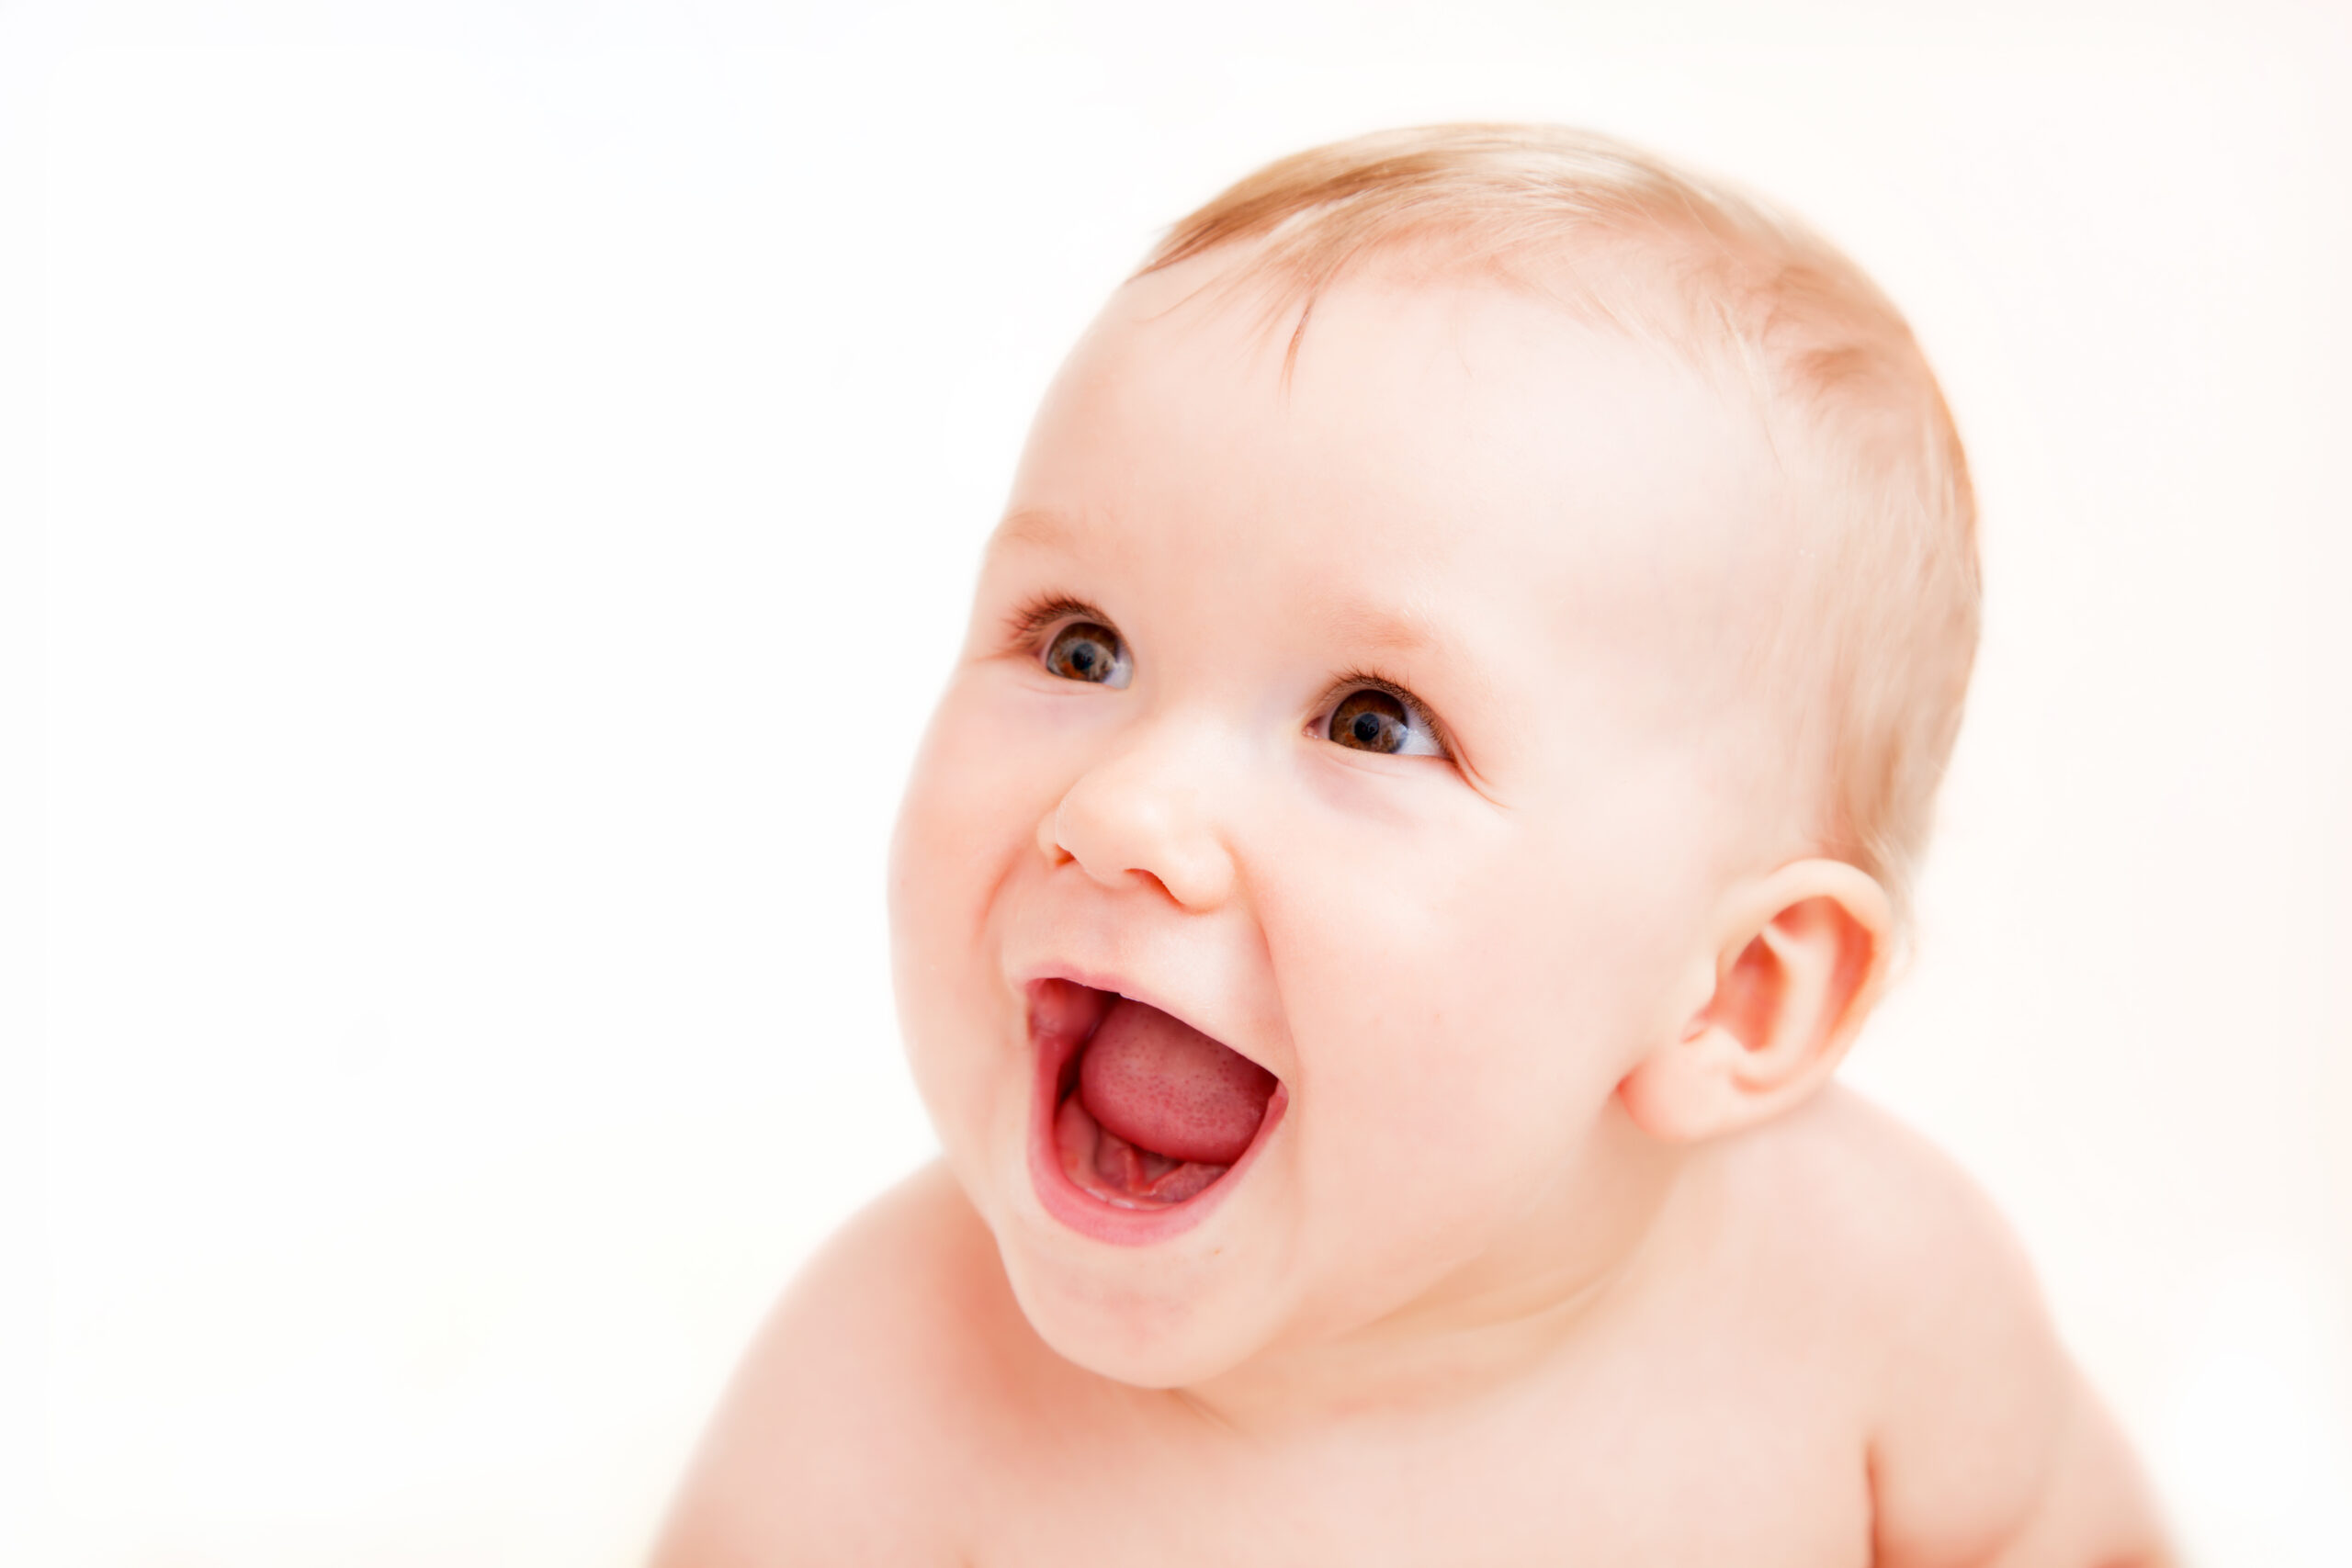 Developmental milestones for infants between 2 and 4 months